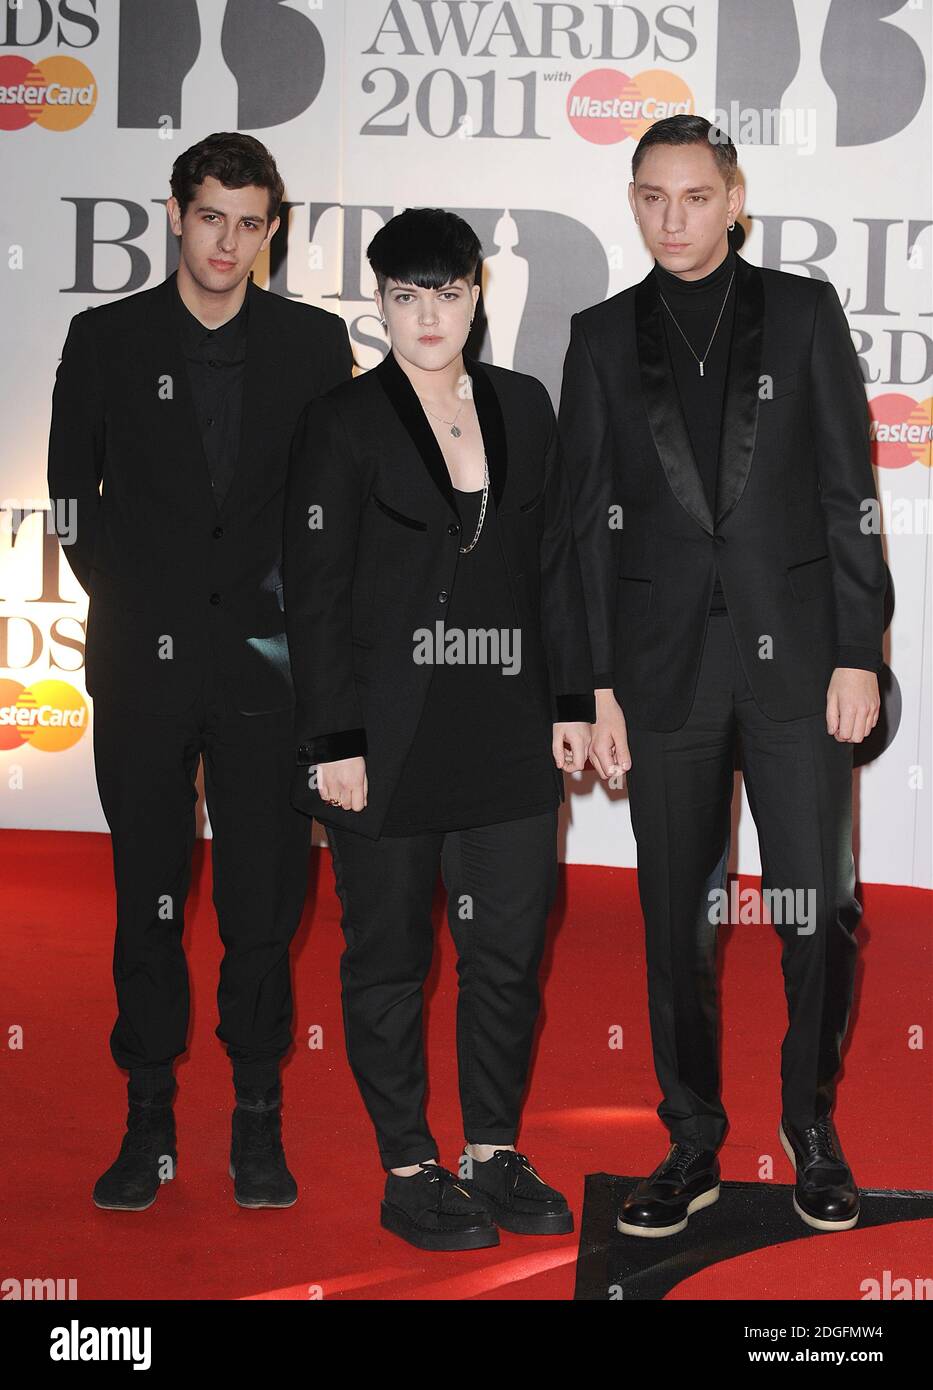 (Da destra a sinistra) Oliver SIM, Romy Madley Croft e Jamie Smith del XX arrivo per i 2011 Brit Awards alla O2 Arena di Londra. Foto Stock